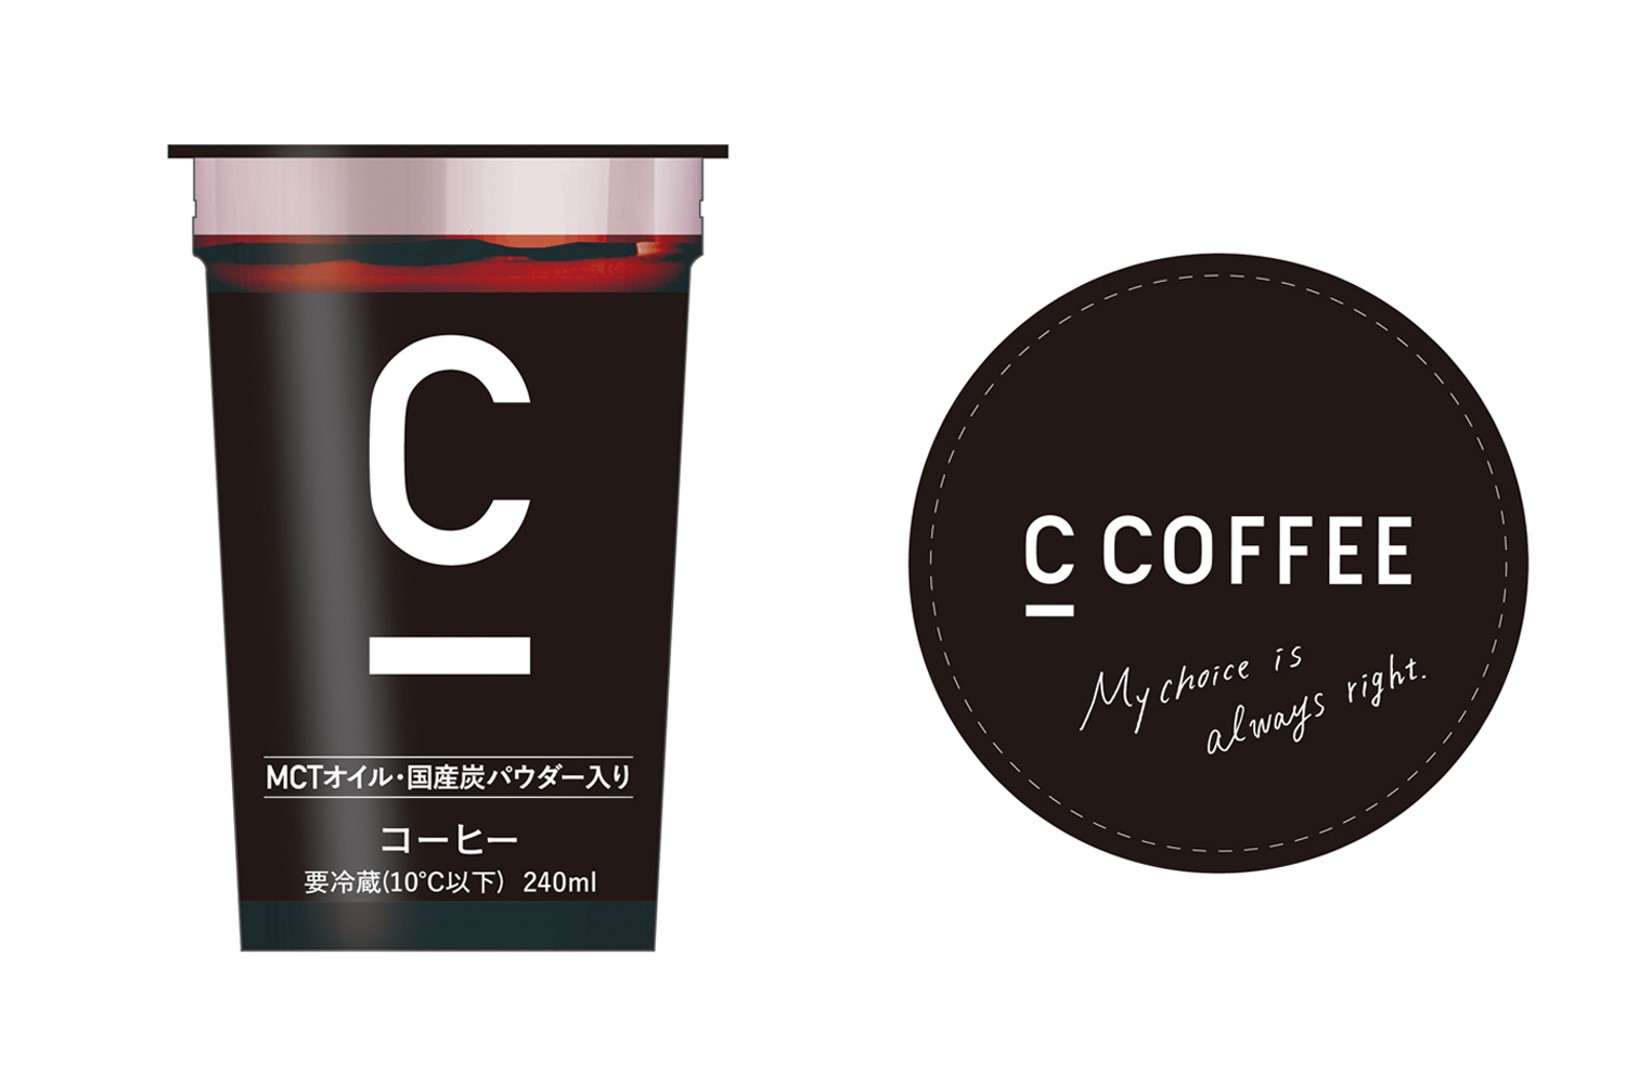 チャコールコーヒー「C COFFEE」初のチルドカップがファミリーマート ...